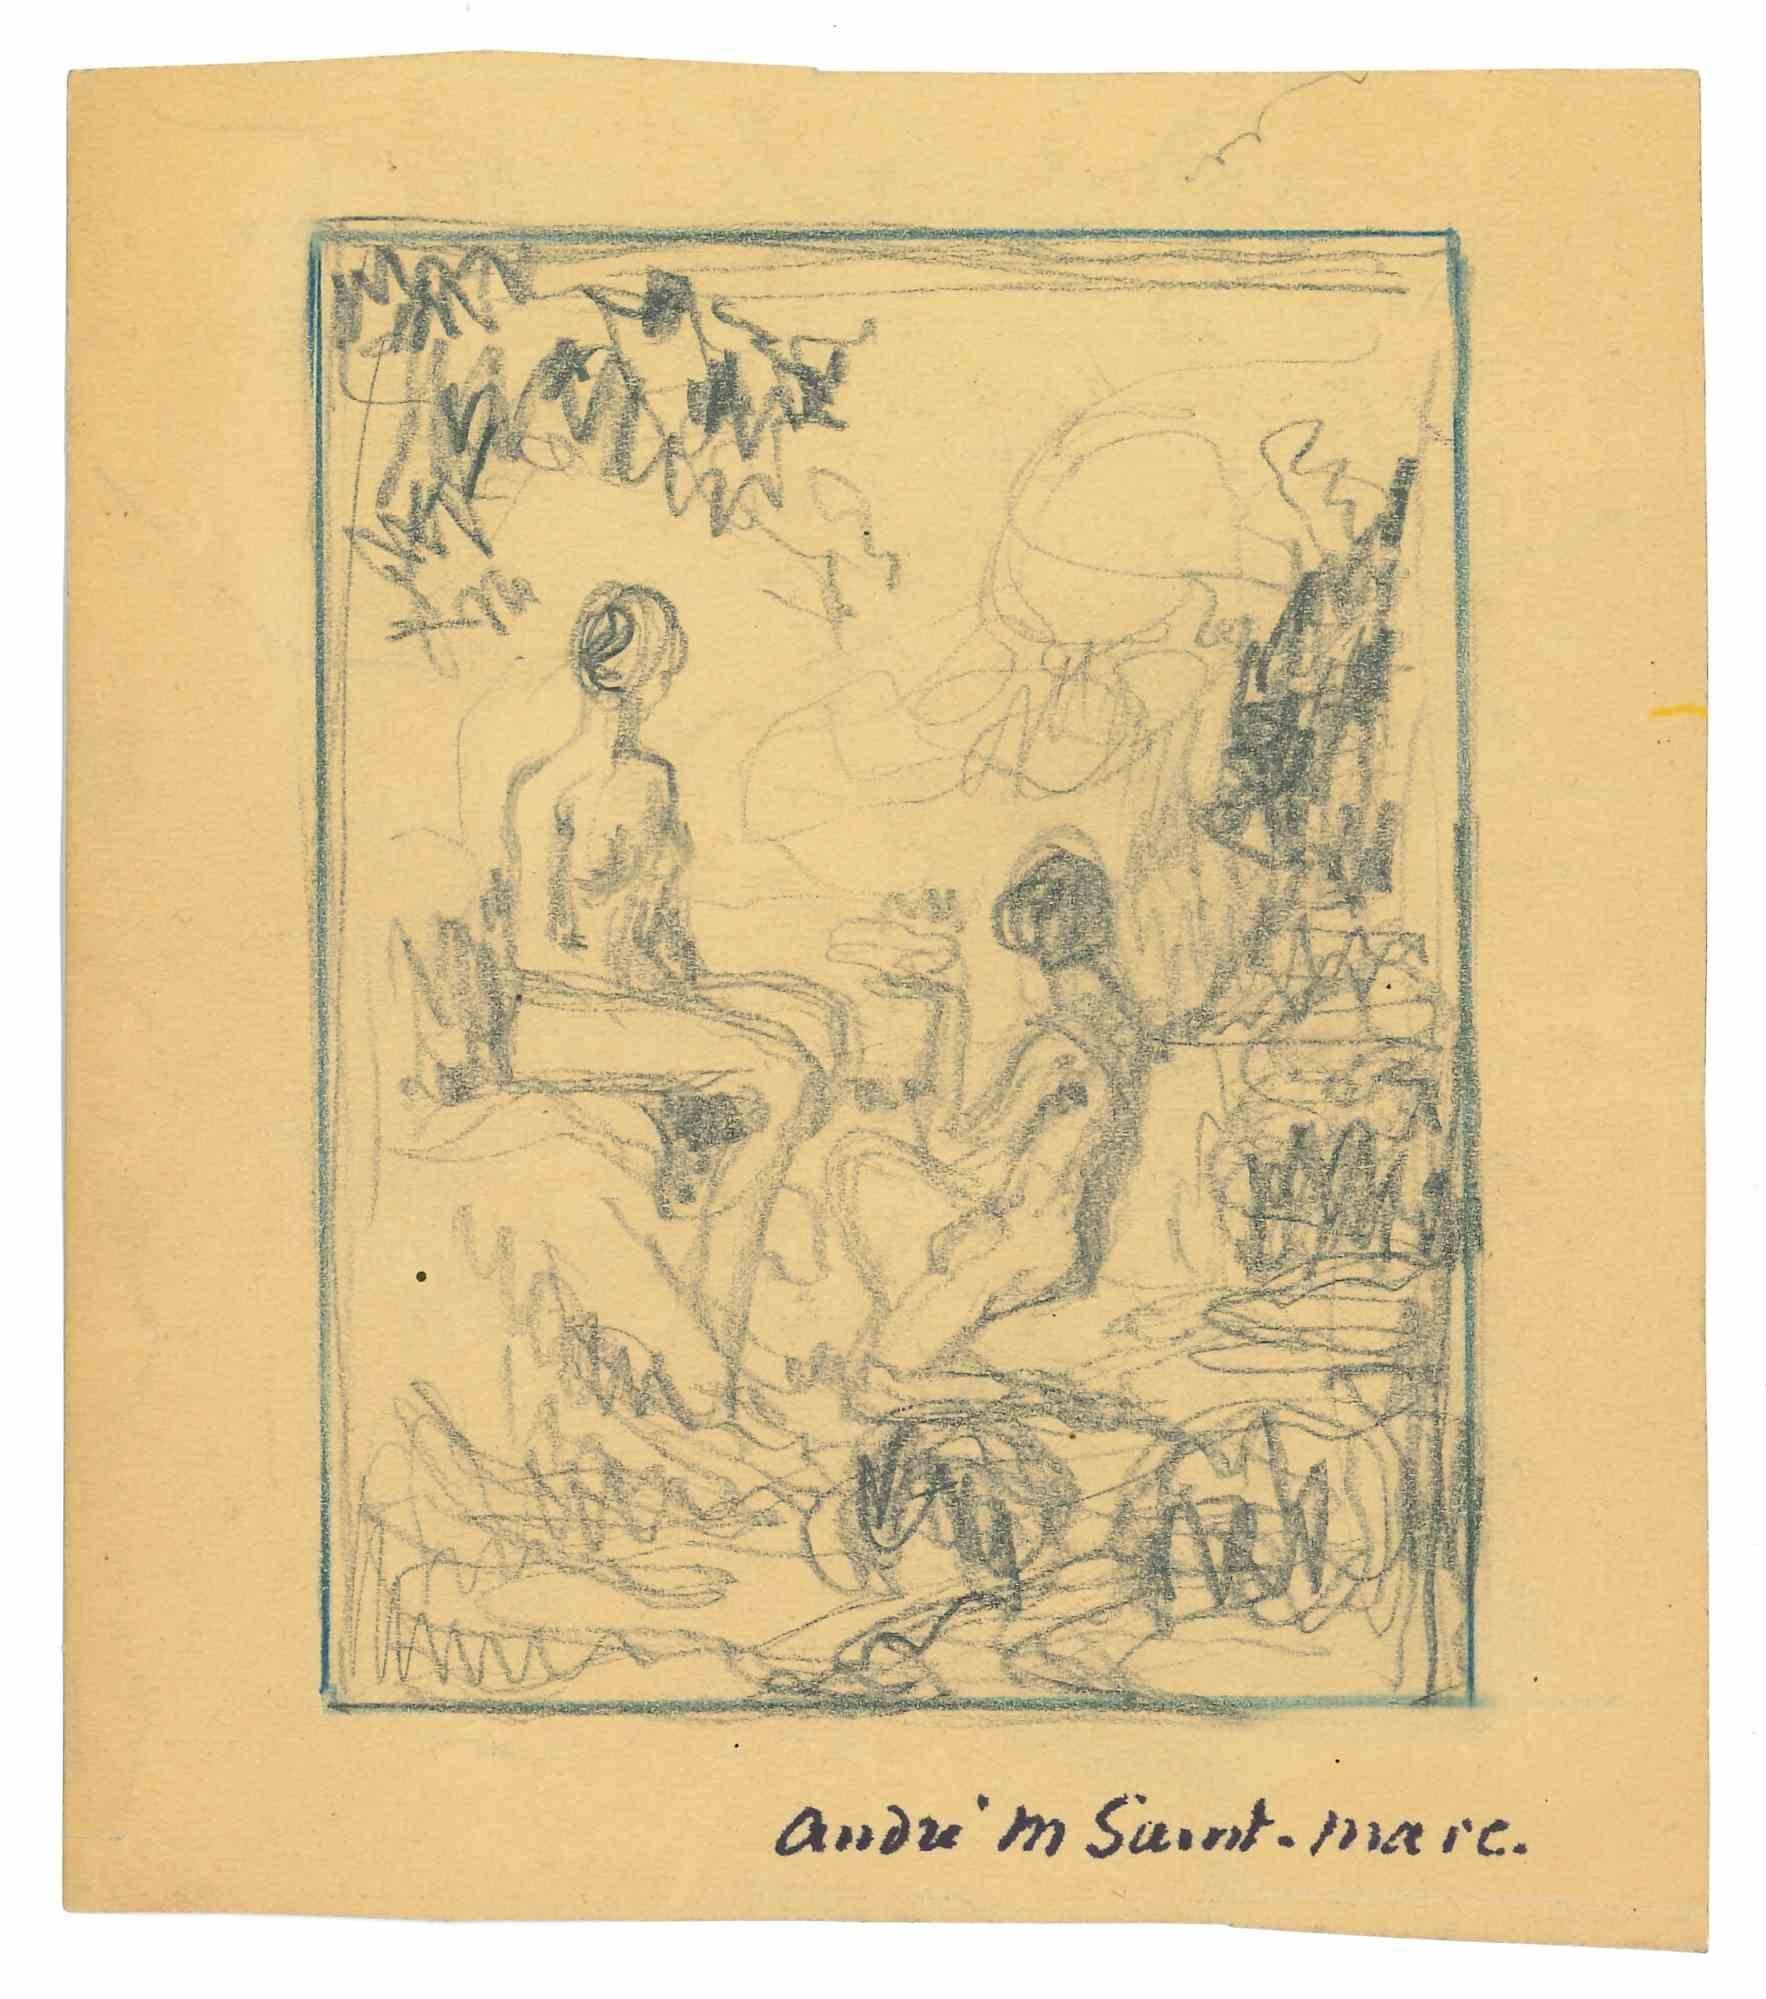 André Meaux Saint-Marc Figurative Art - Bather - Original Pencil Drawing by André MeauxSaint-Marc - Early 20th Century